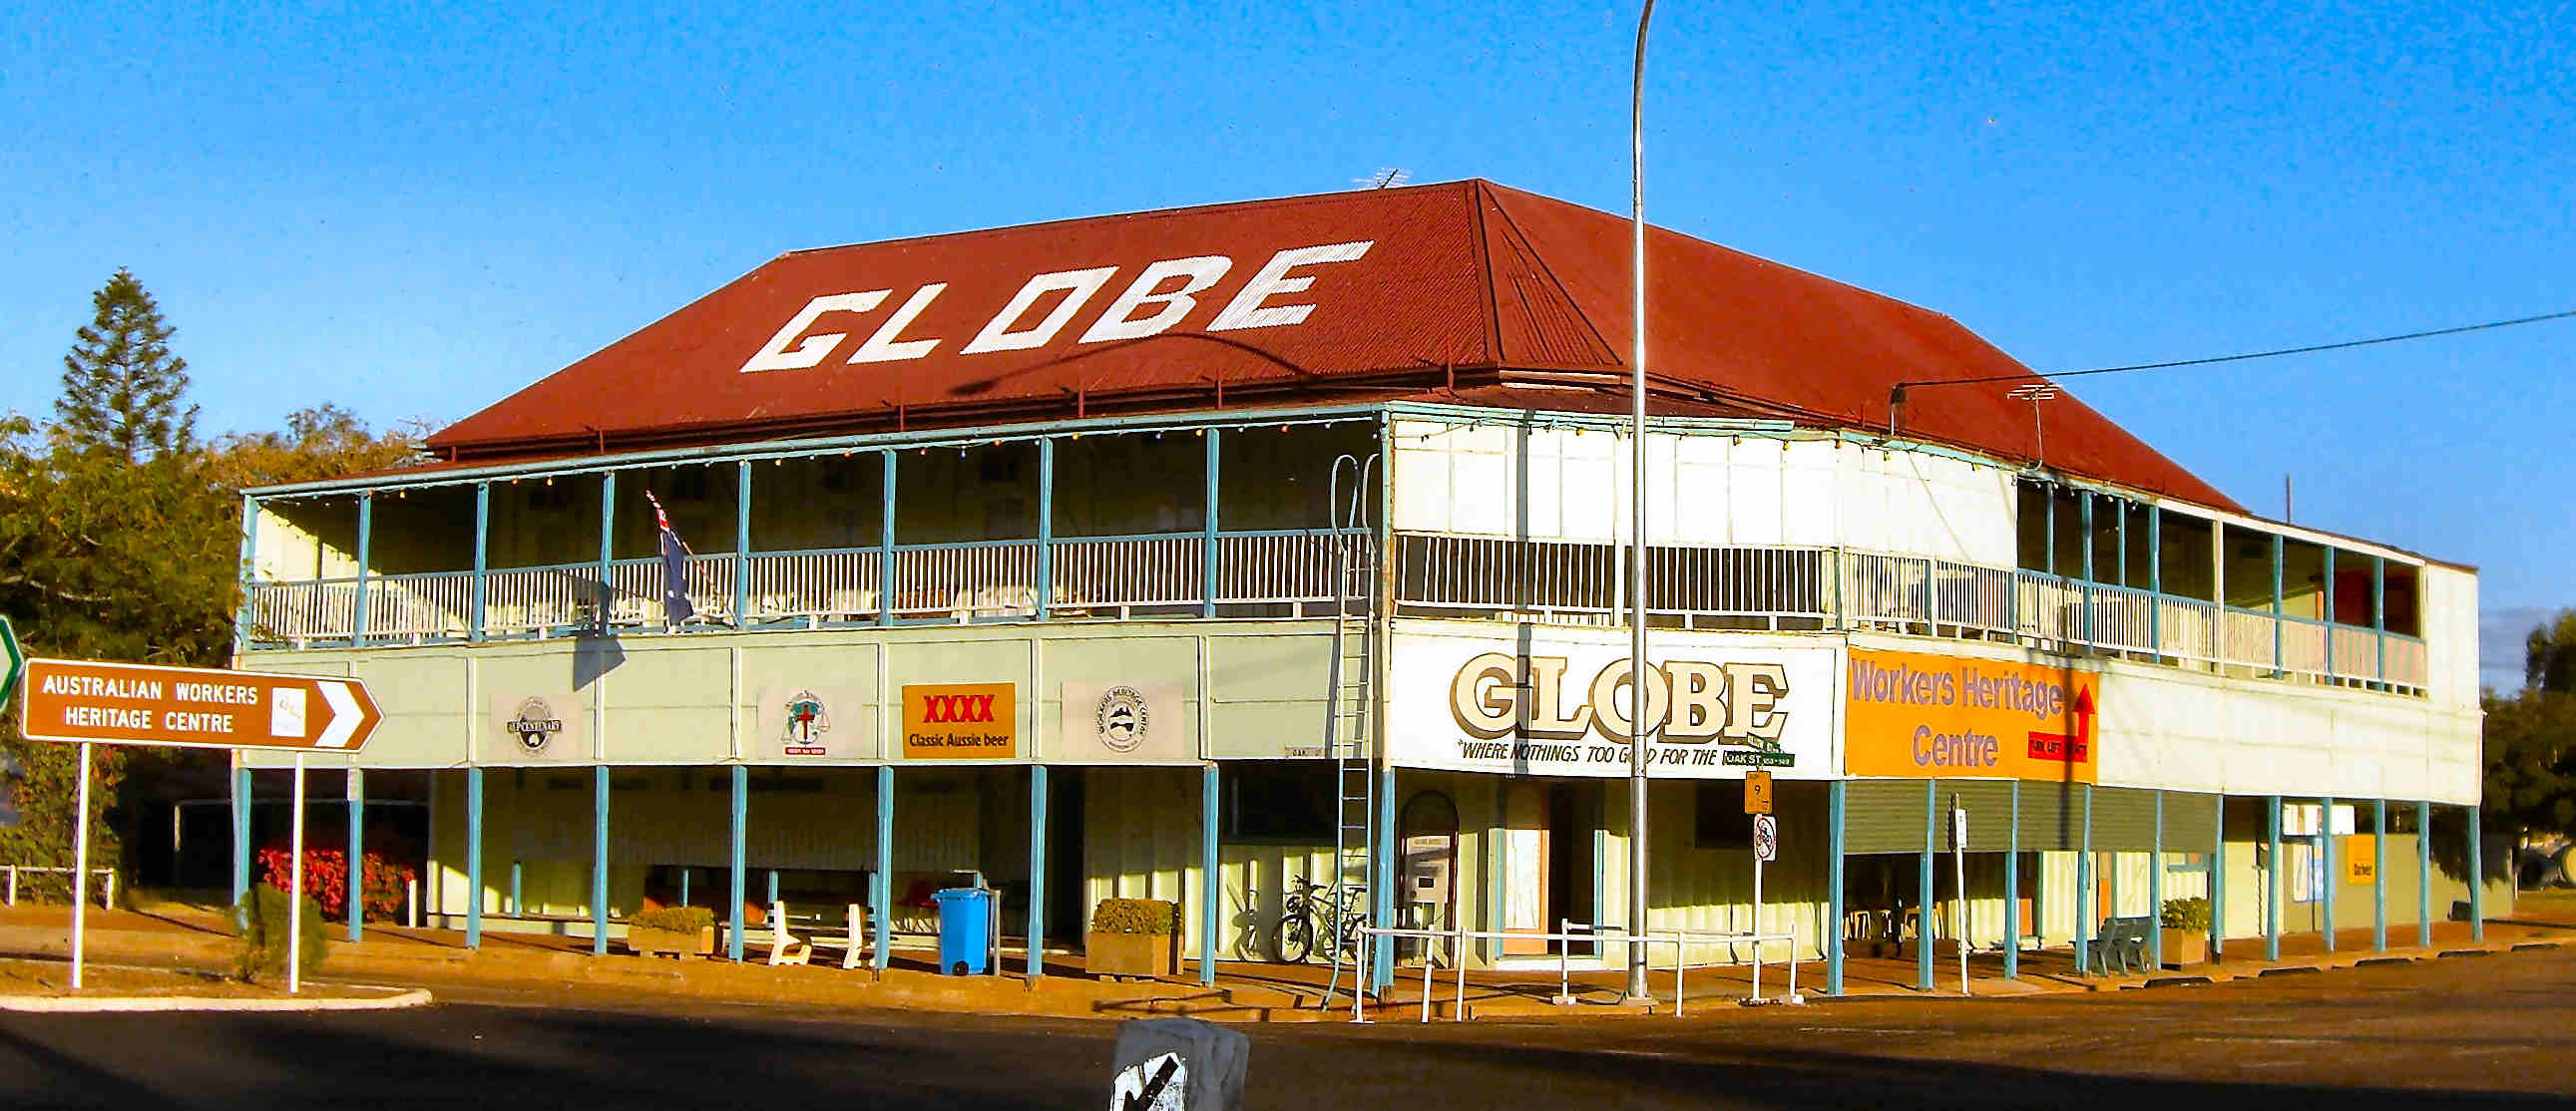 The Globe Hotel